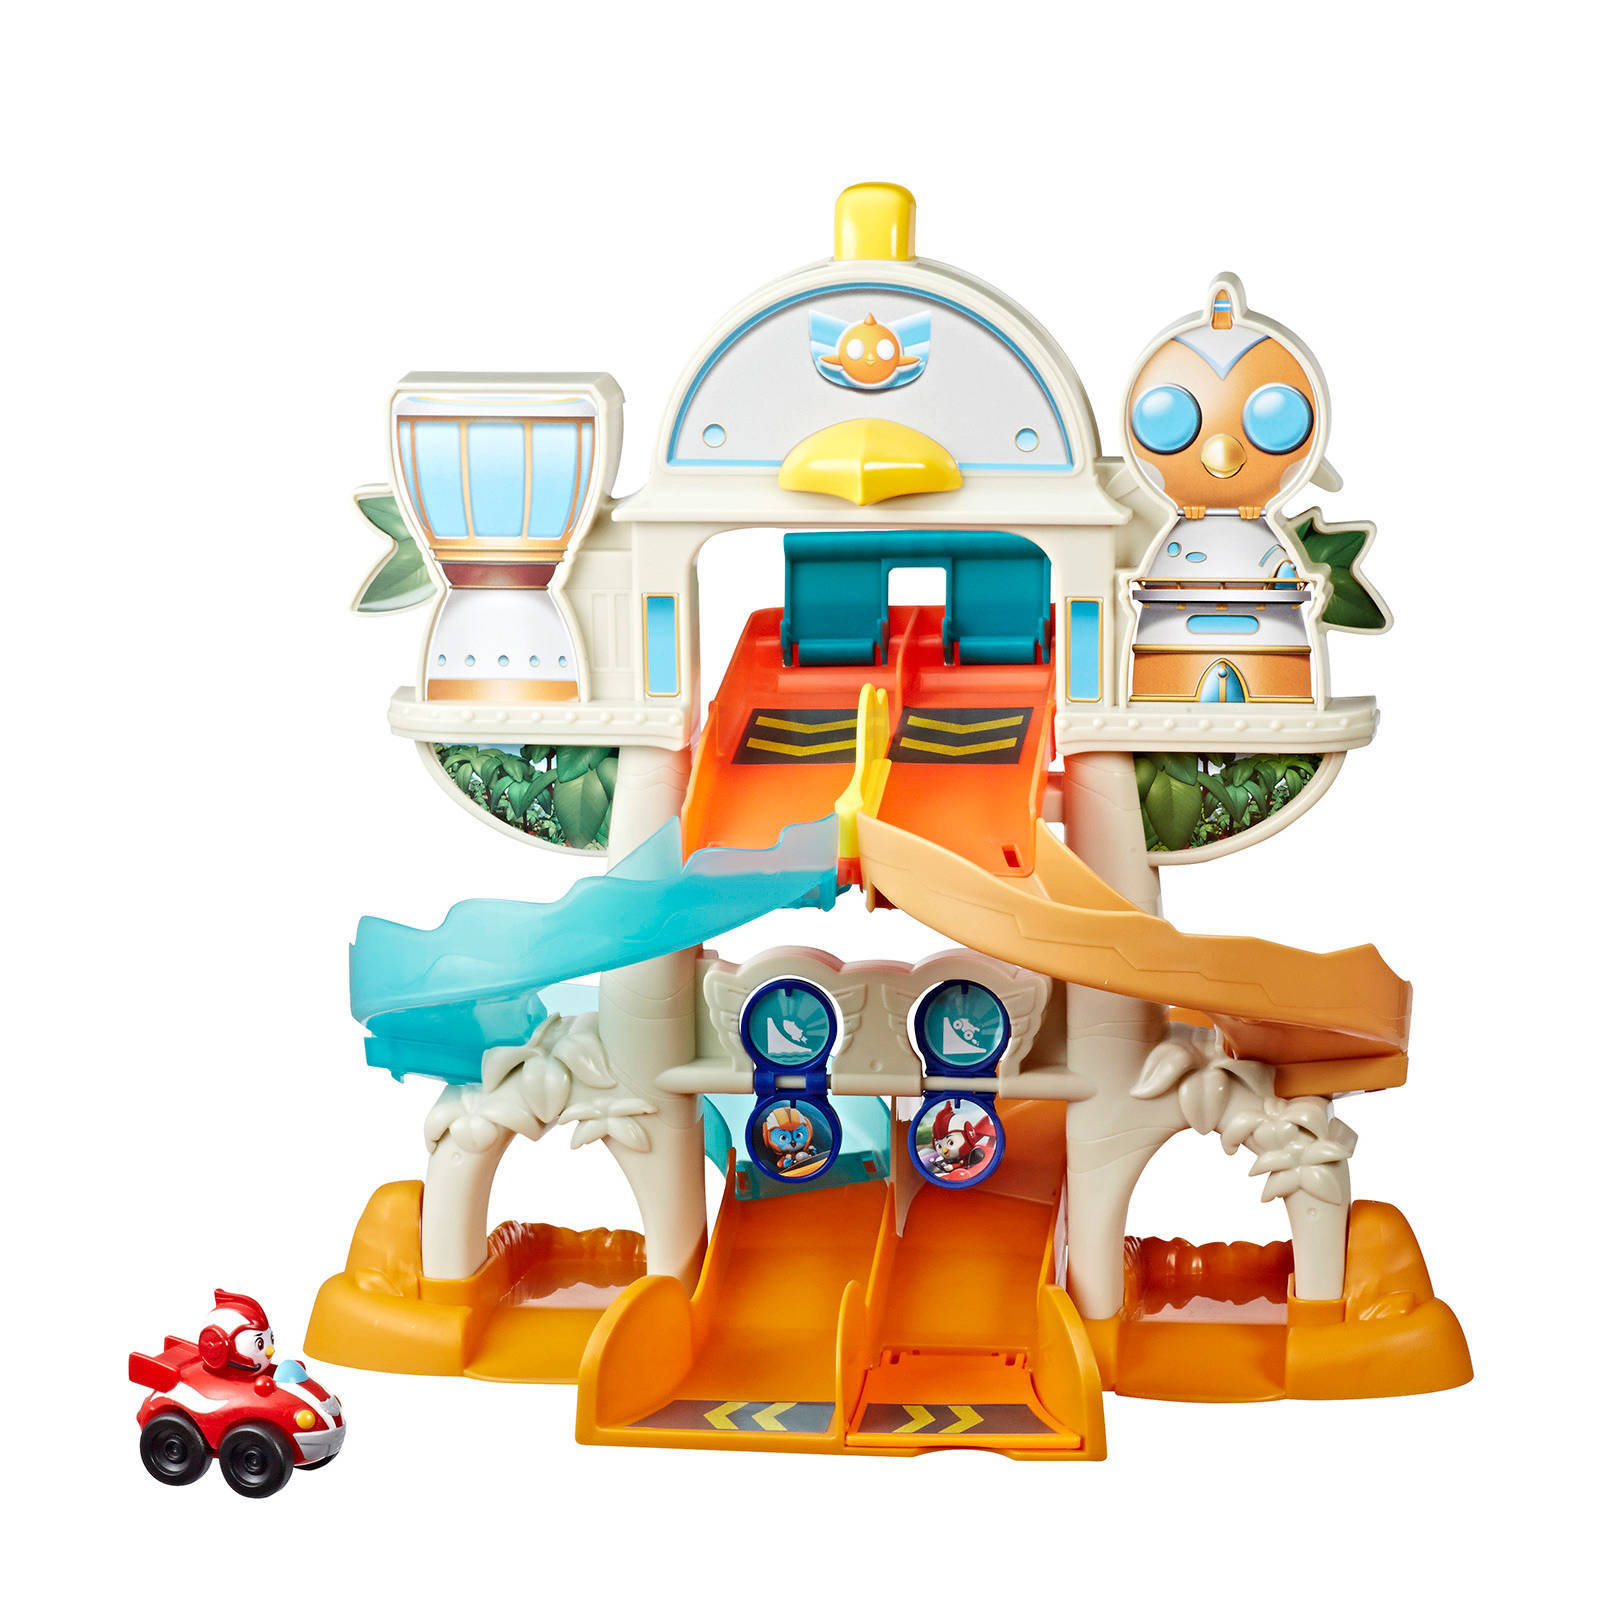 Hasbro Playskool Nicelodeon Jr. Top Wing Academy Racebaan Auto Speelset online kopen